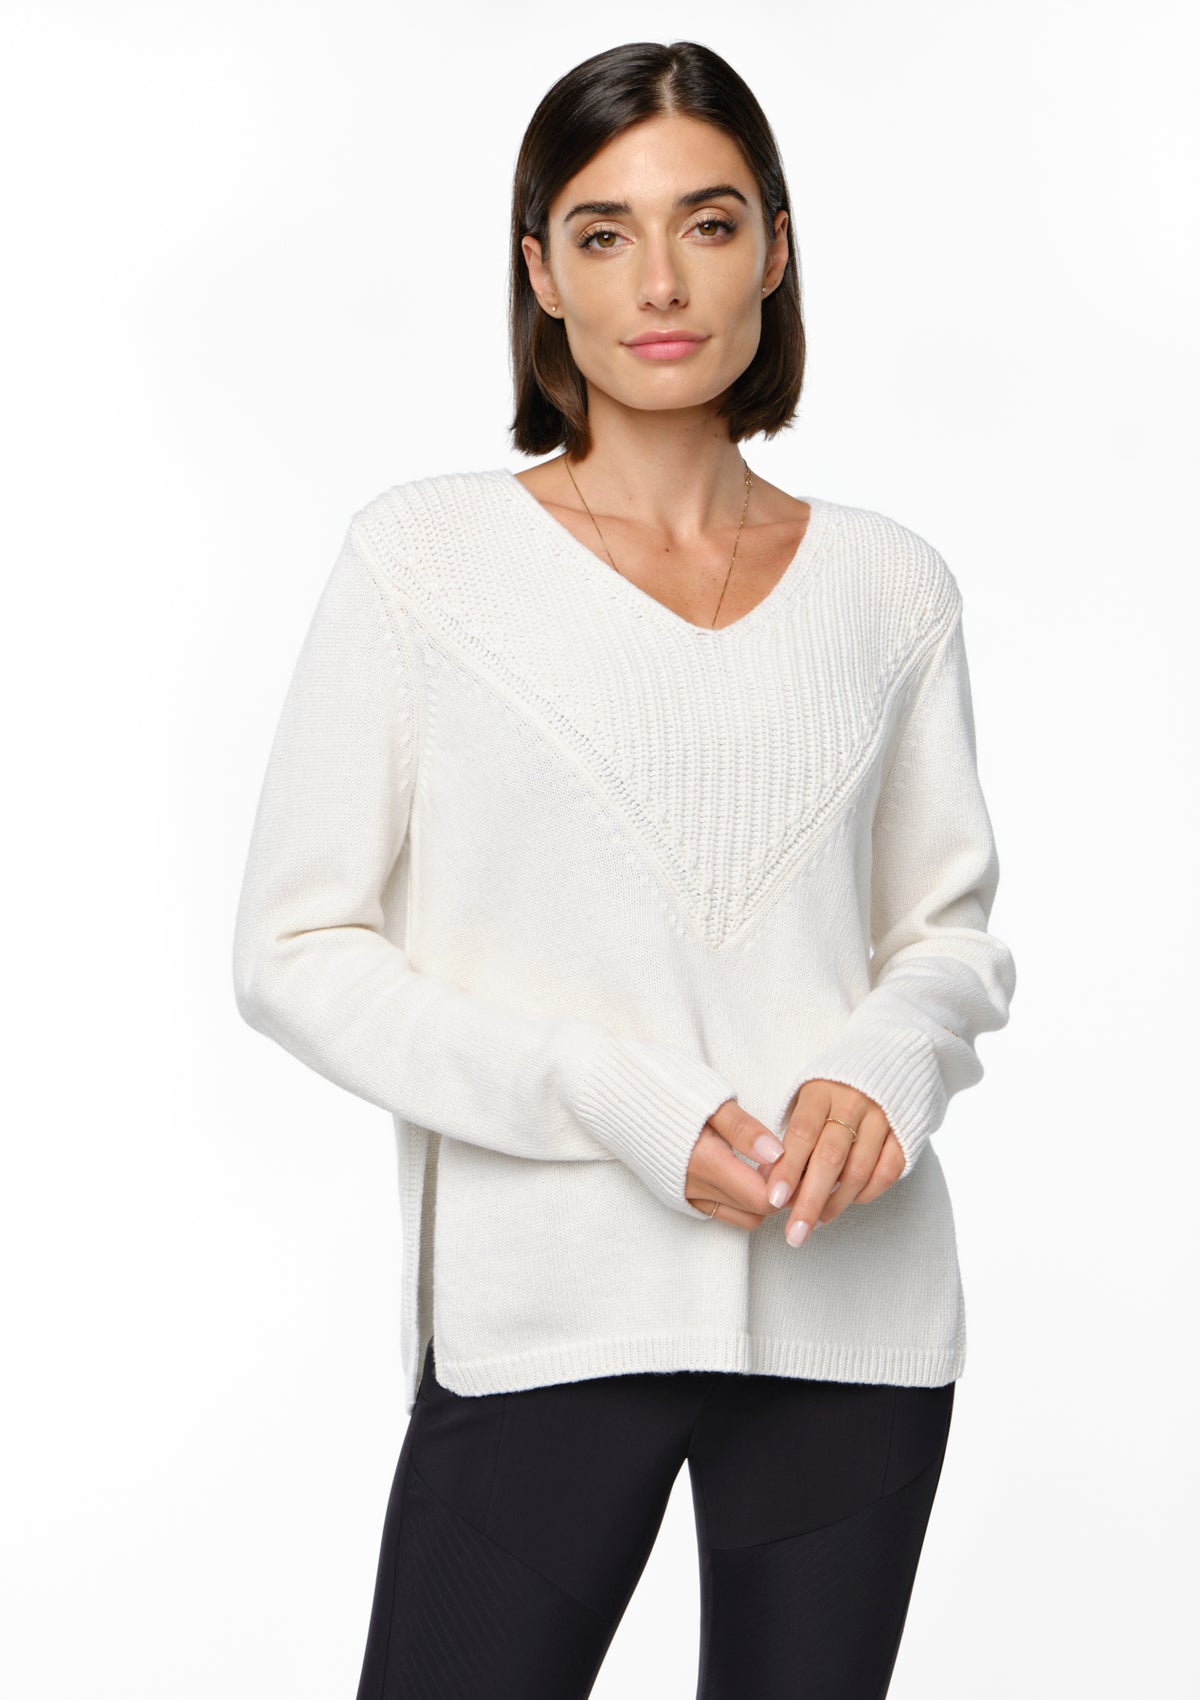 NEROLA Merino Cashmere Sweater cajo